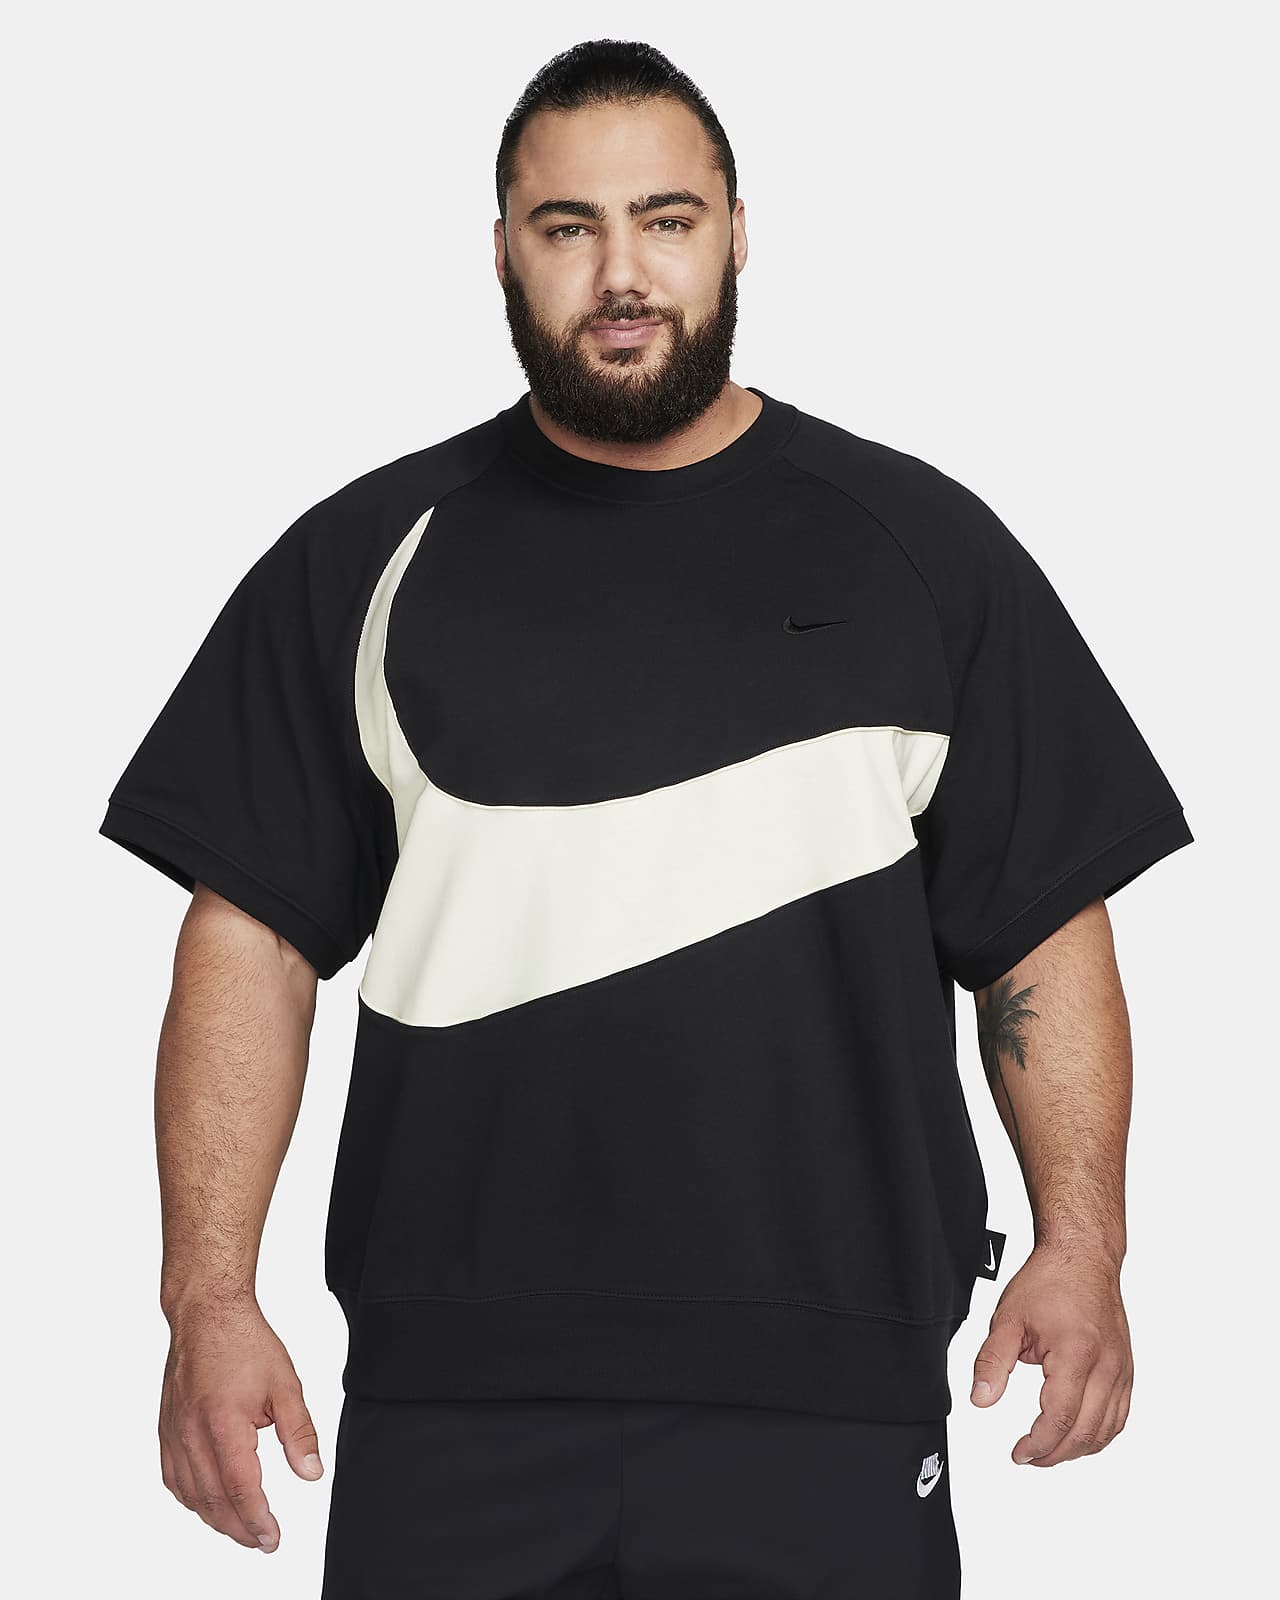 Nike Sportswear Men's Short-Sleeve T-Shirt.